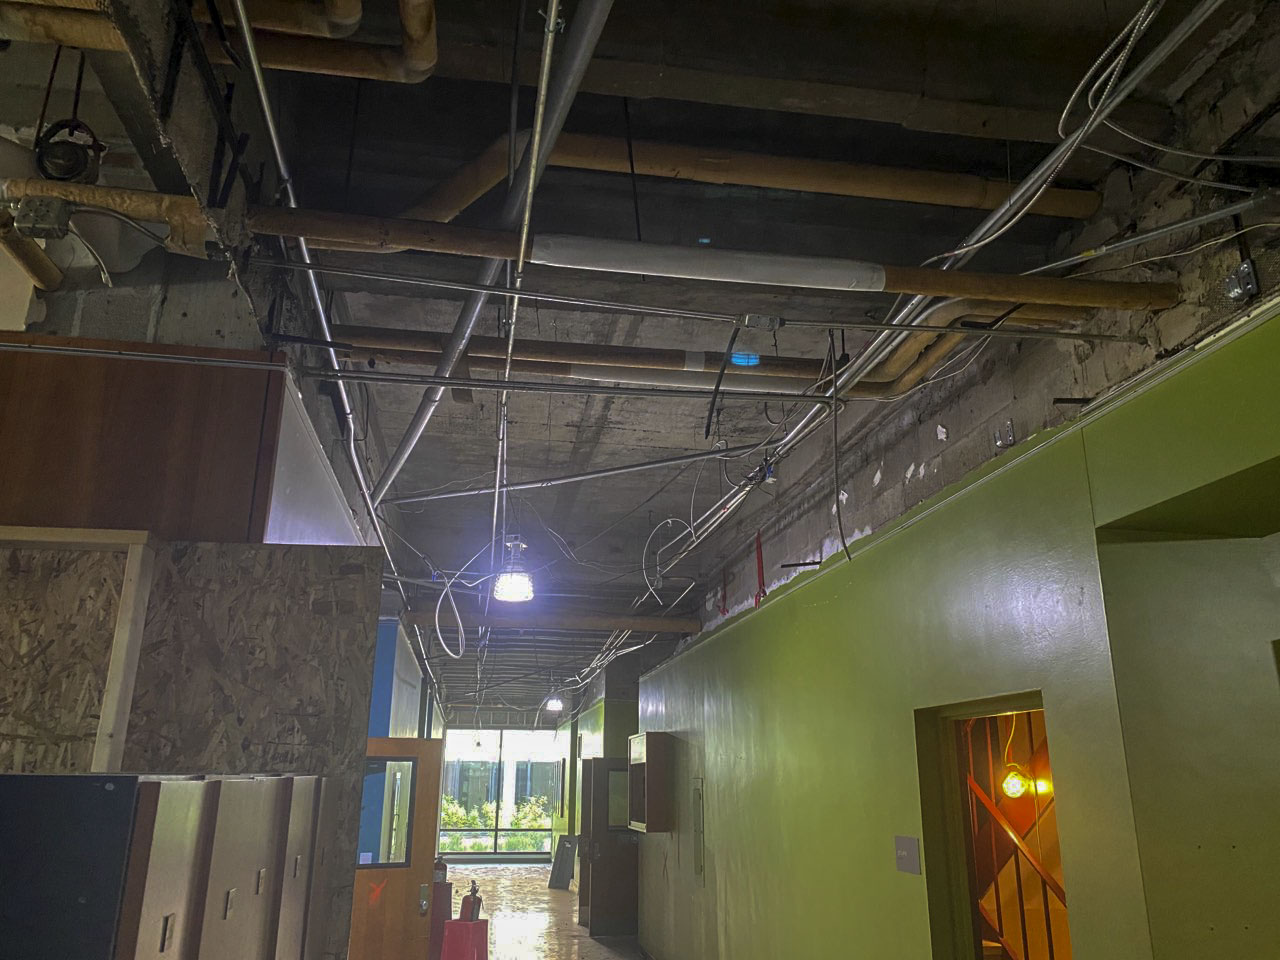 Photo of interior ceiling demolition work in Eppley Center fourth floor